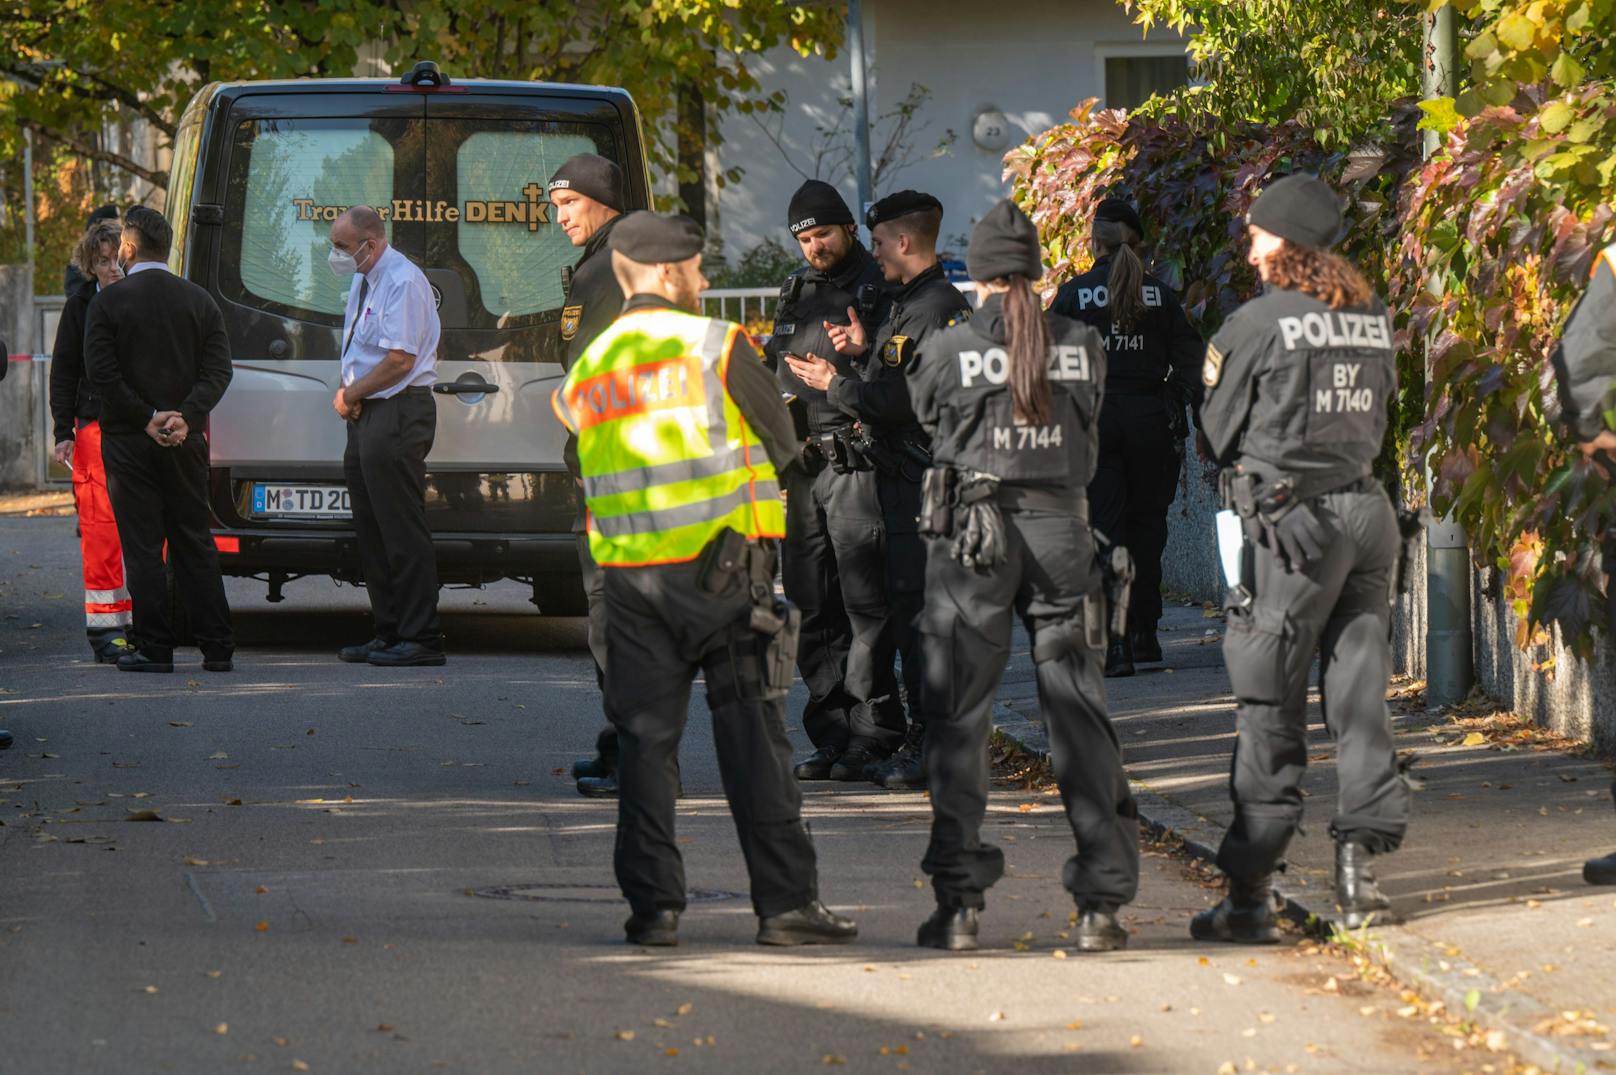 14-Jährige tot in München aufgefunden